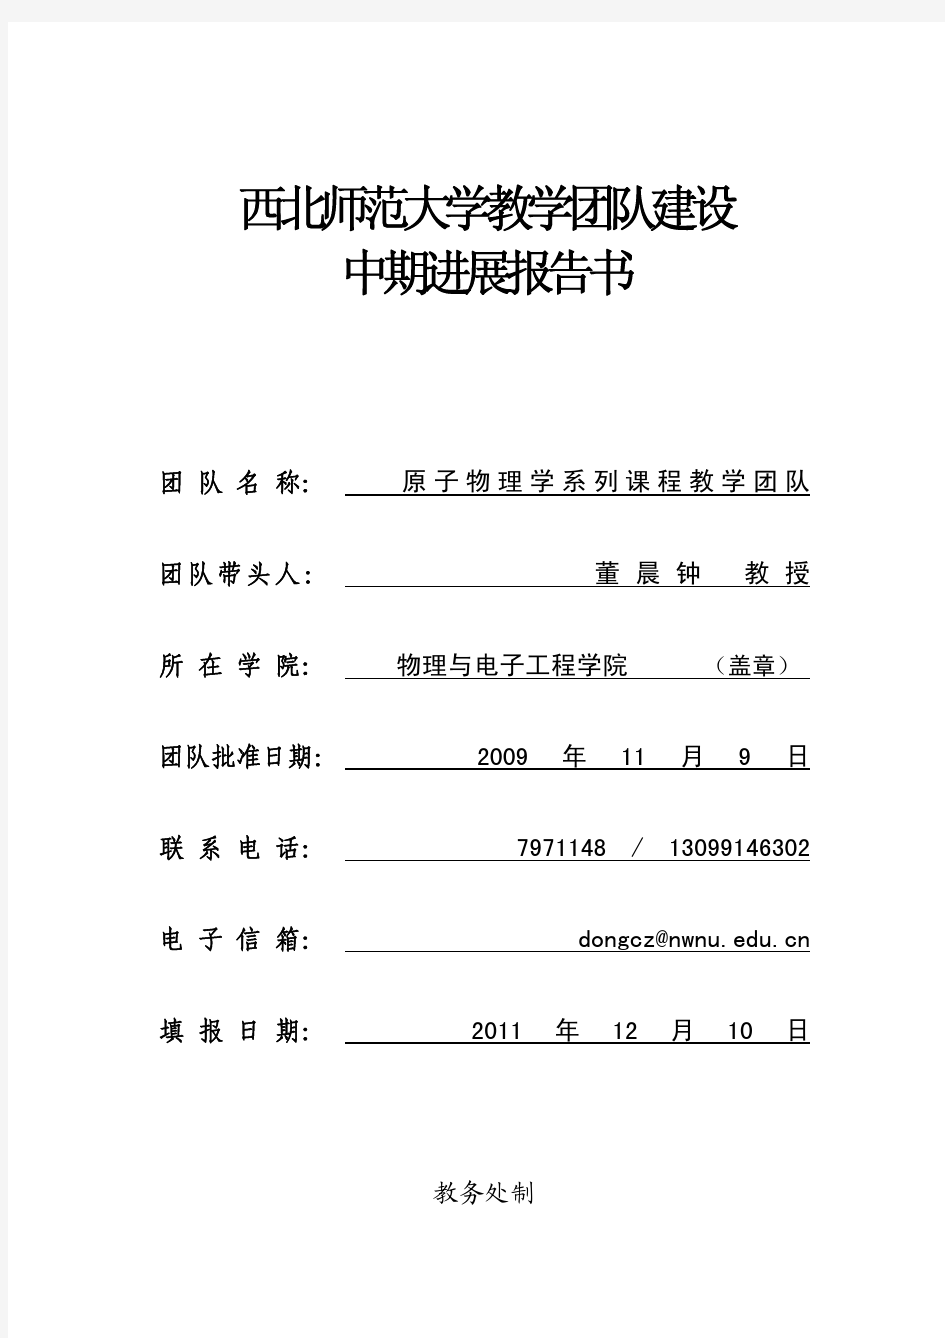 湖南省自然科学基金-中期进展报告书